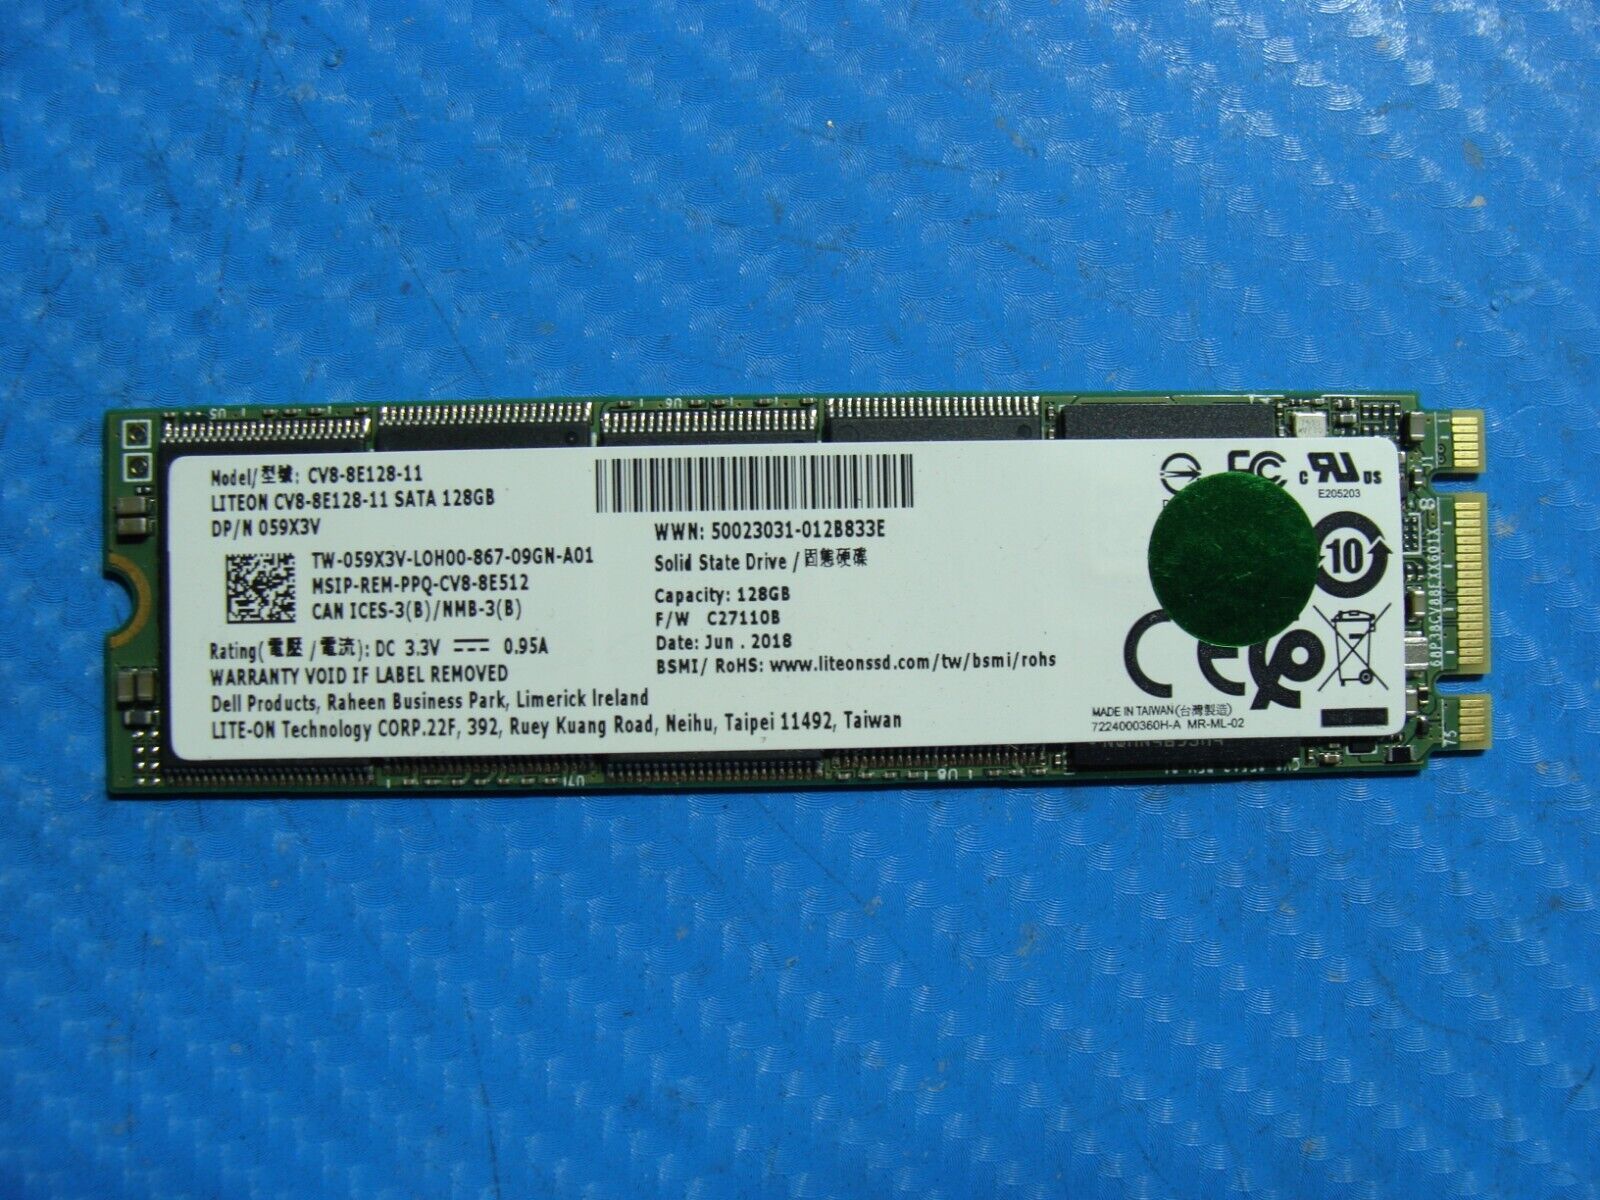 Dell 7490 Liteon 128Gb Sata M.2 128GB SSD Solid State Drive CV8-8E128-11 59X3V